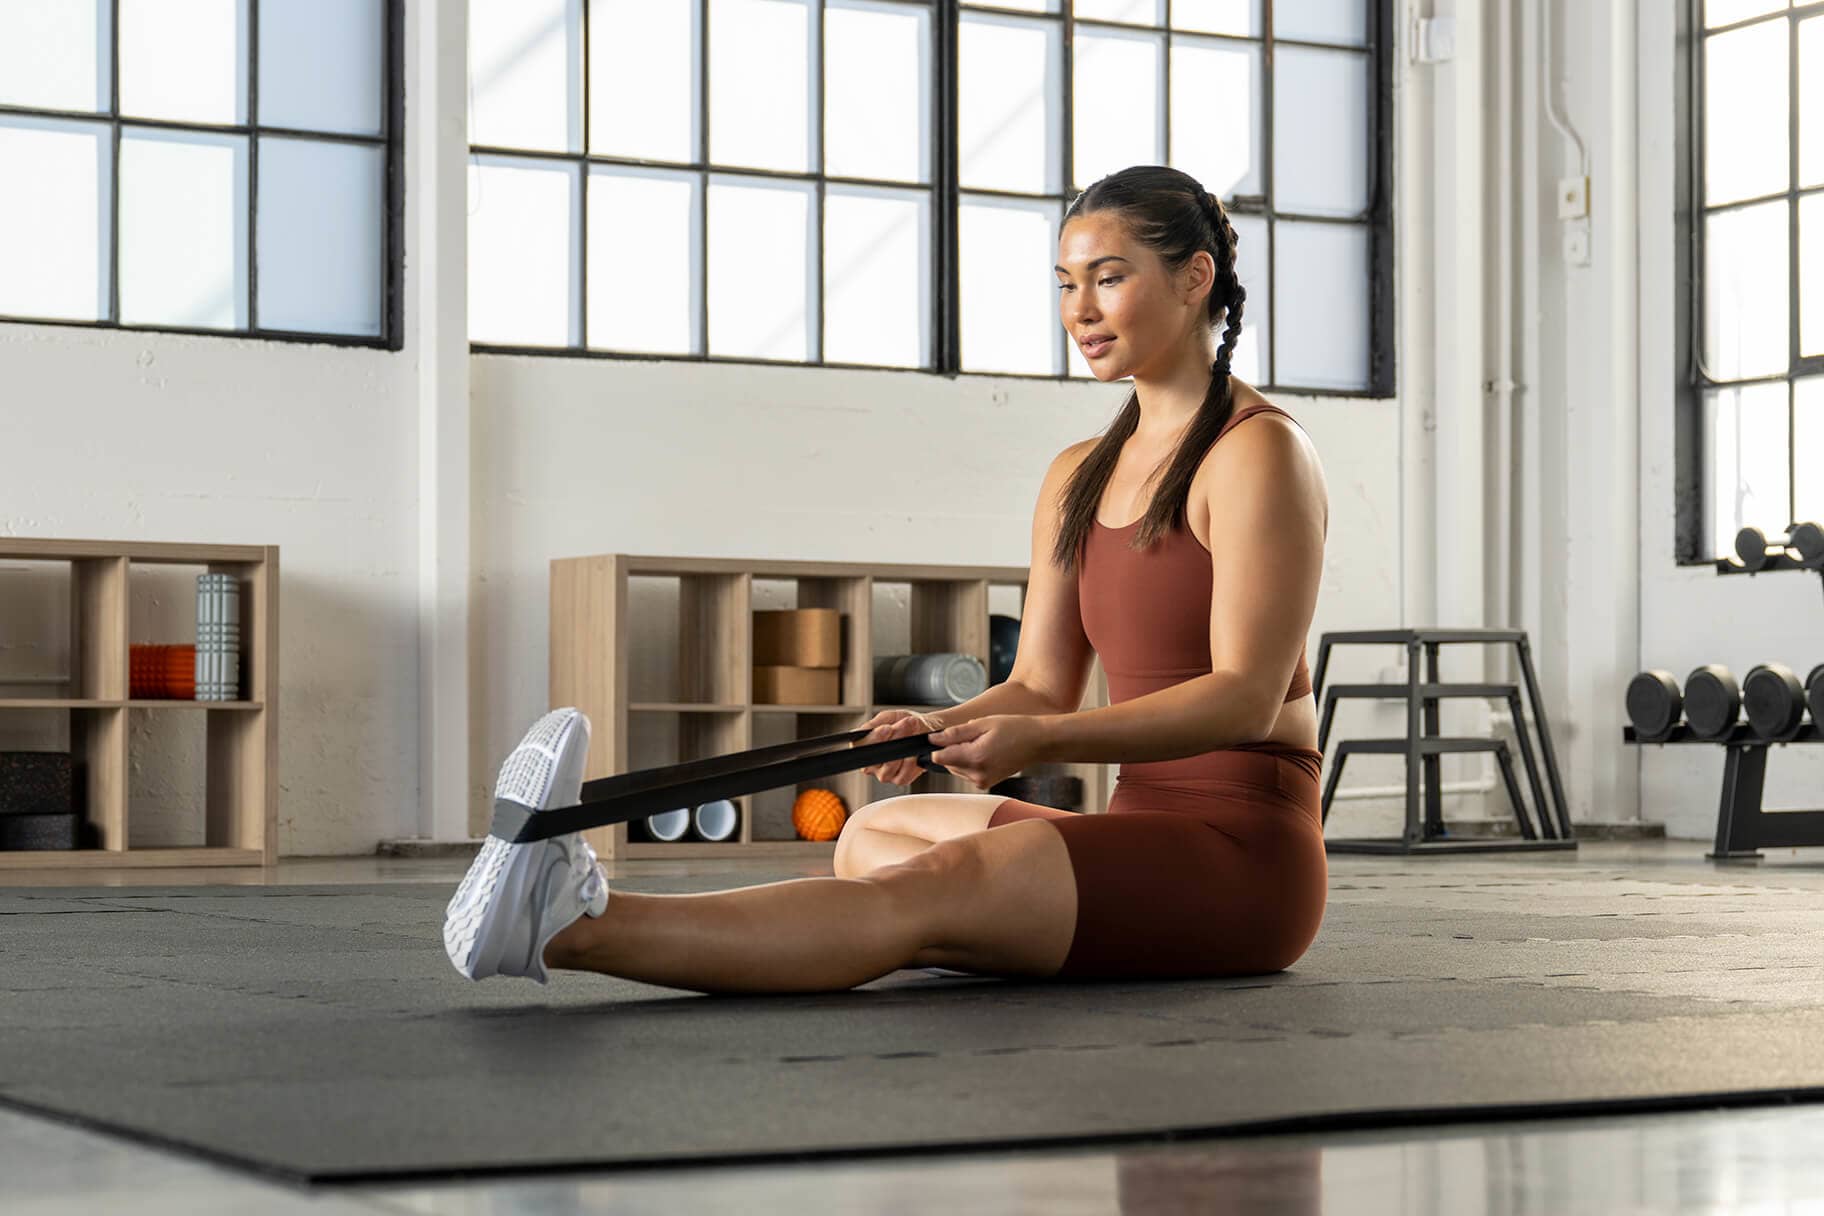 Cría fondo amortiguar Seis ejercicios para la pantorrilla que los fisioterapeutas recomiendan  hacer semanalmente. Nike MX